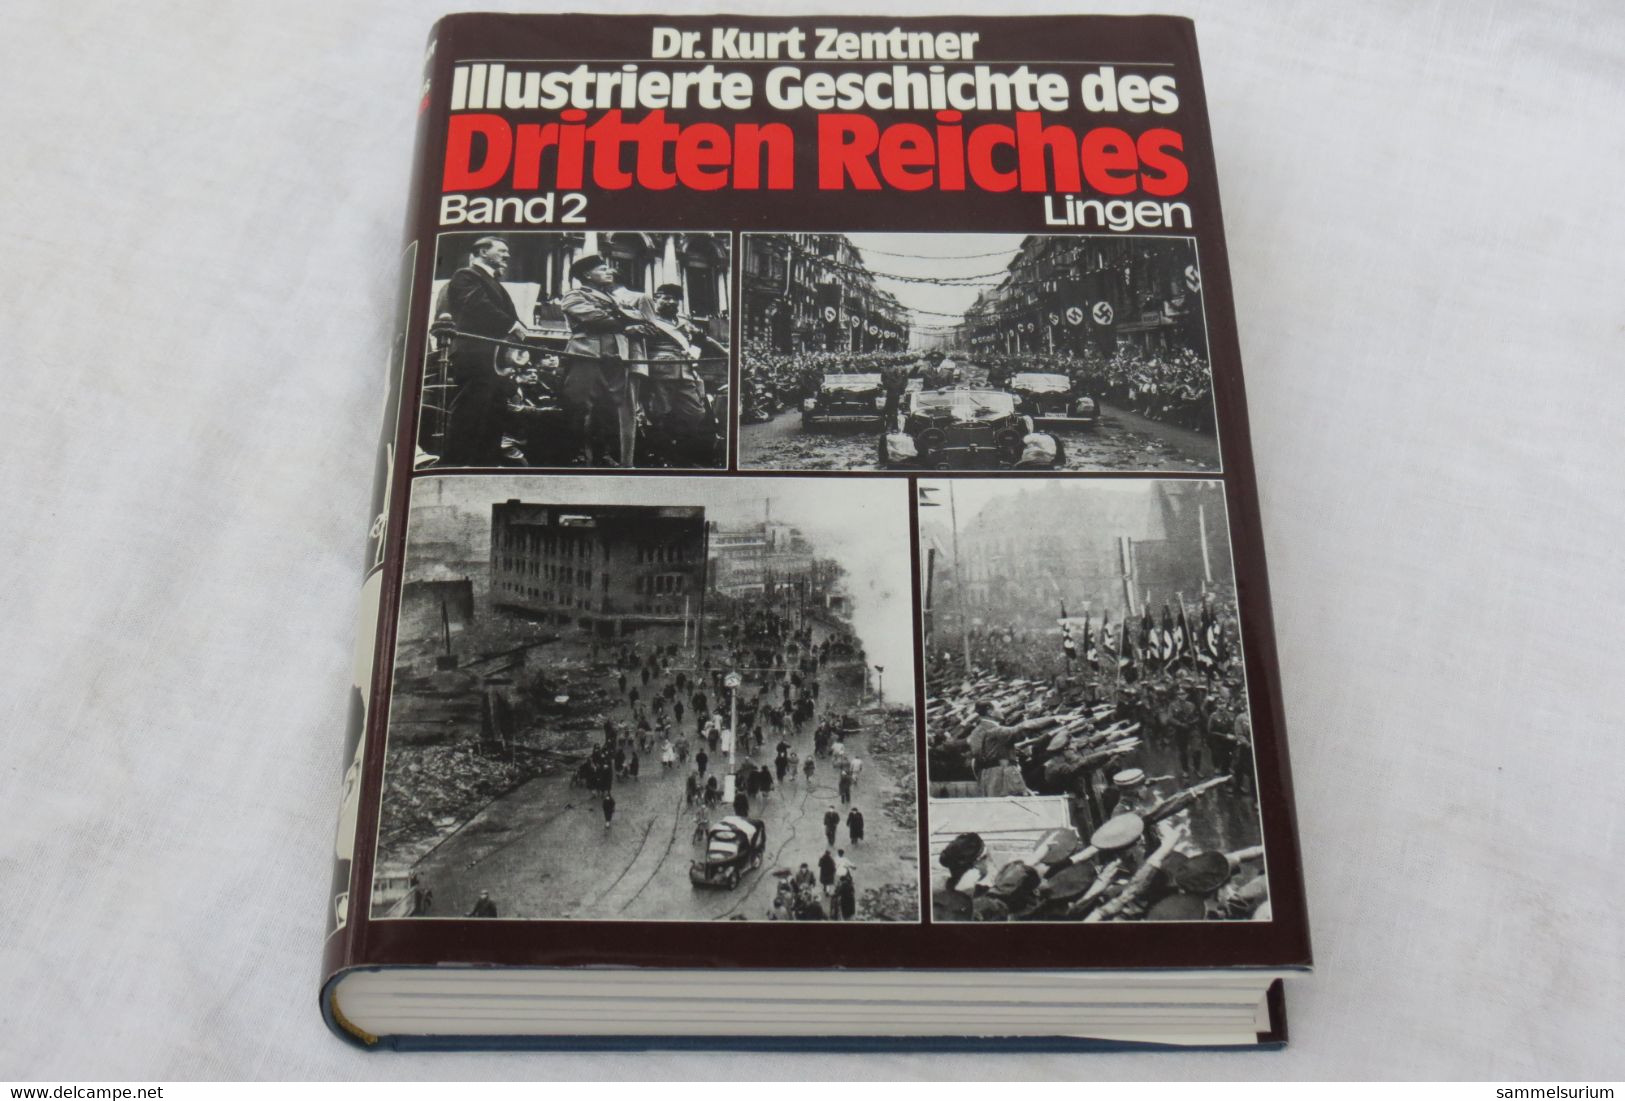 Dr. Kurt Zentner "Illustrierte Geschichte Des Dritten Reiches" Band 2 - German